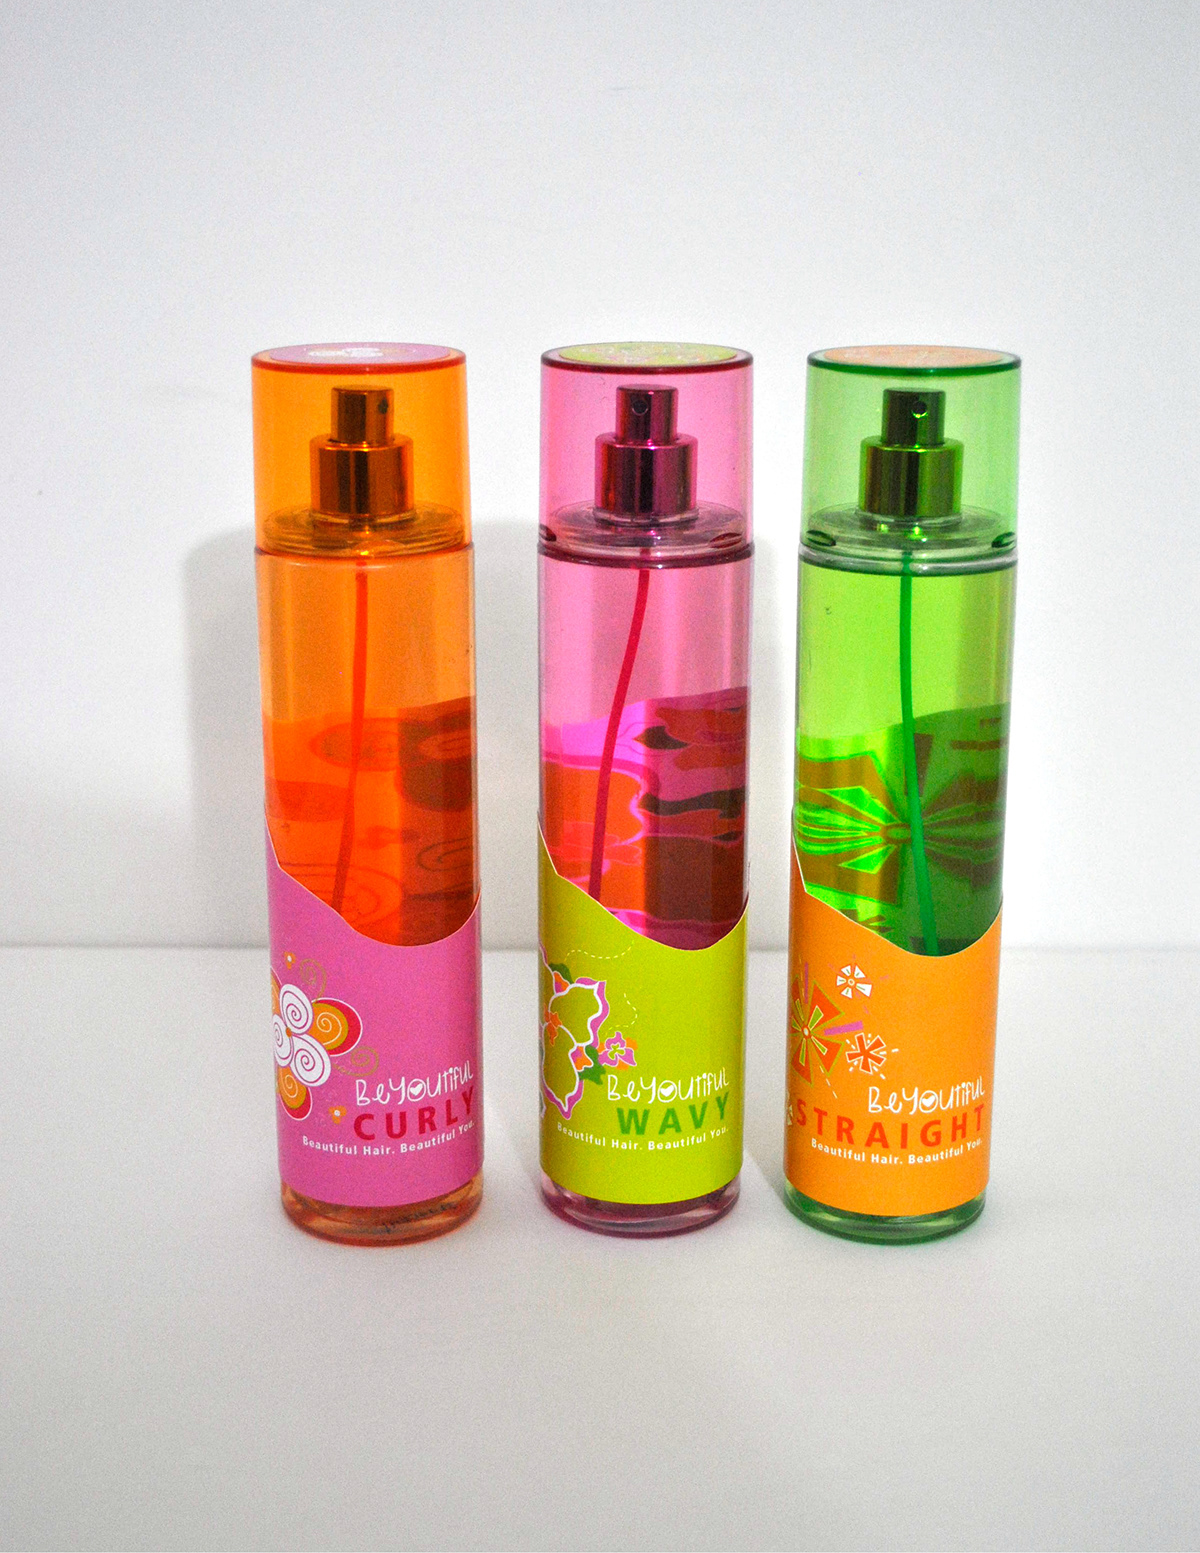 #hygiene #tweengirls #packagedesign #hairspray